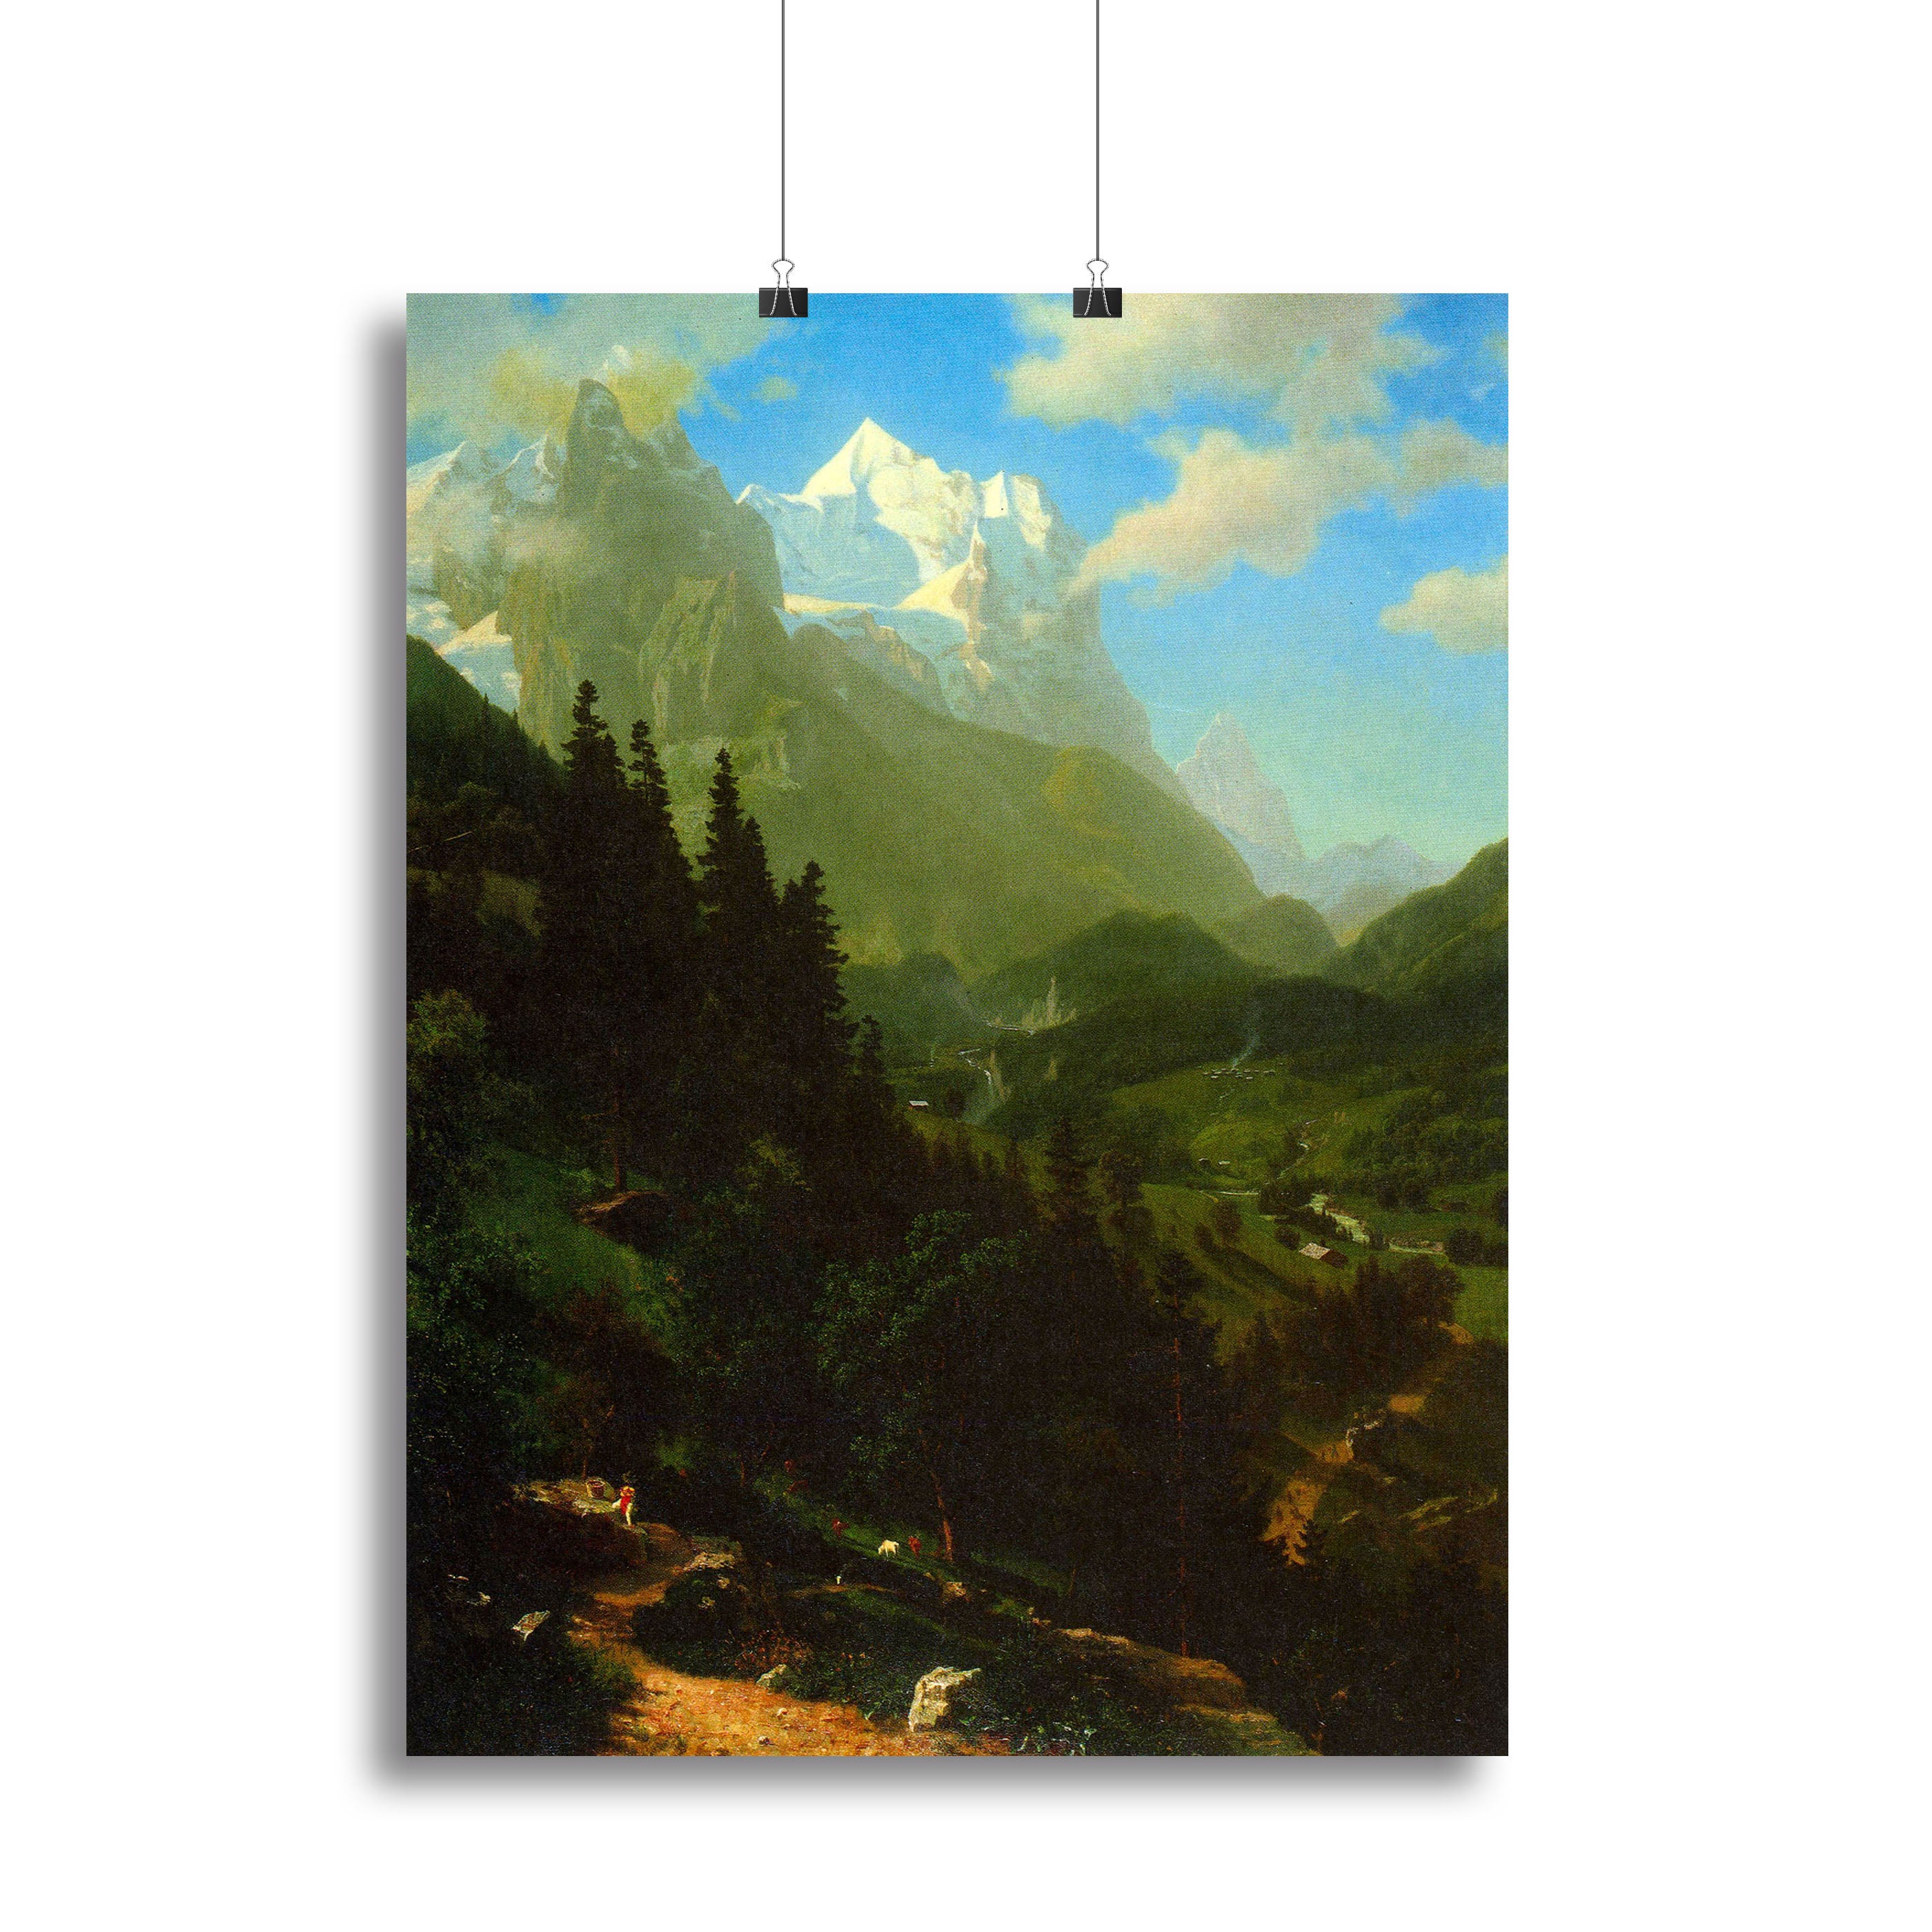 Matterhorn by Bierstadt Canvas Print or Poster - Canvas Art Rocks - 2